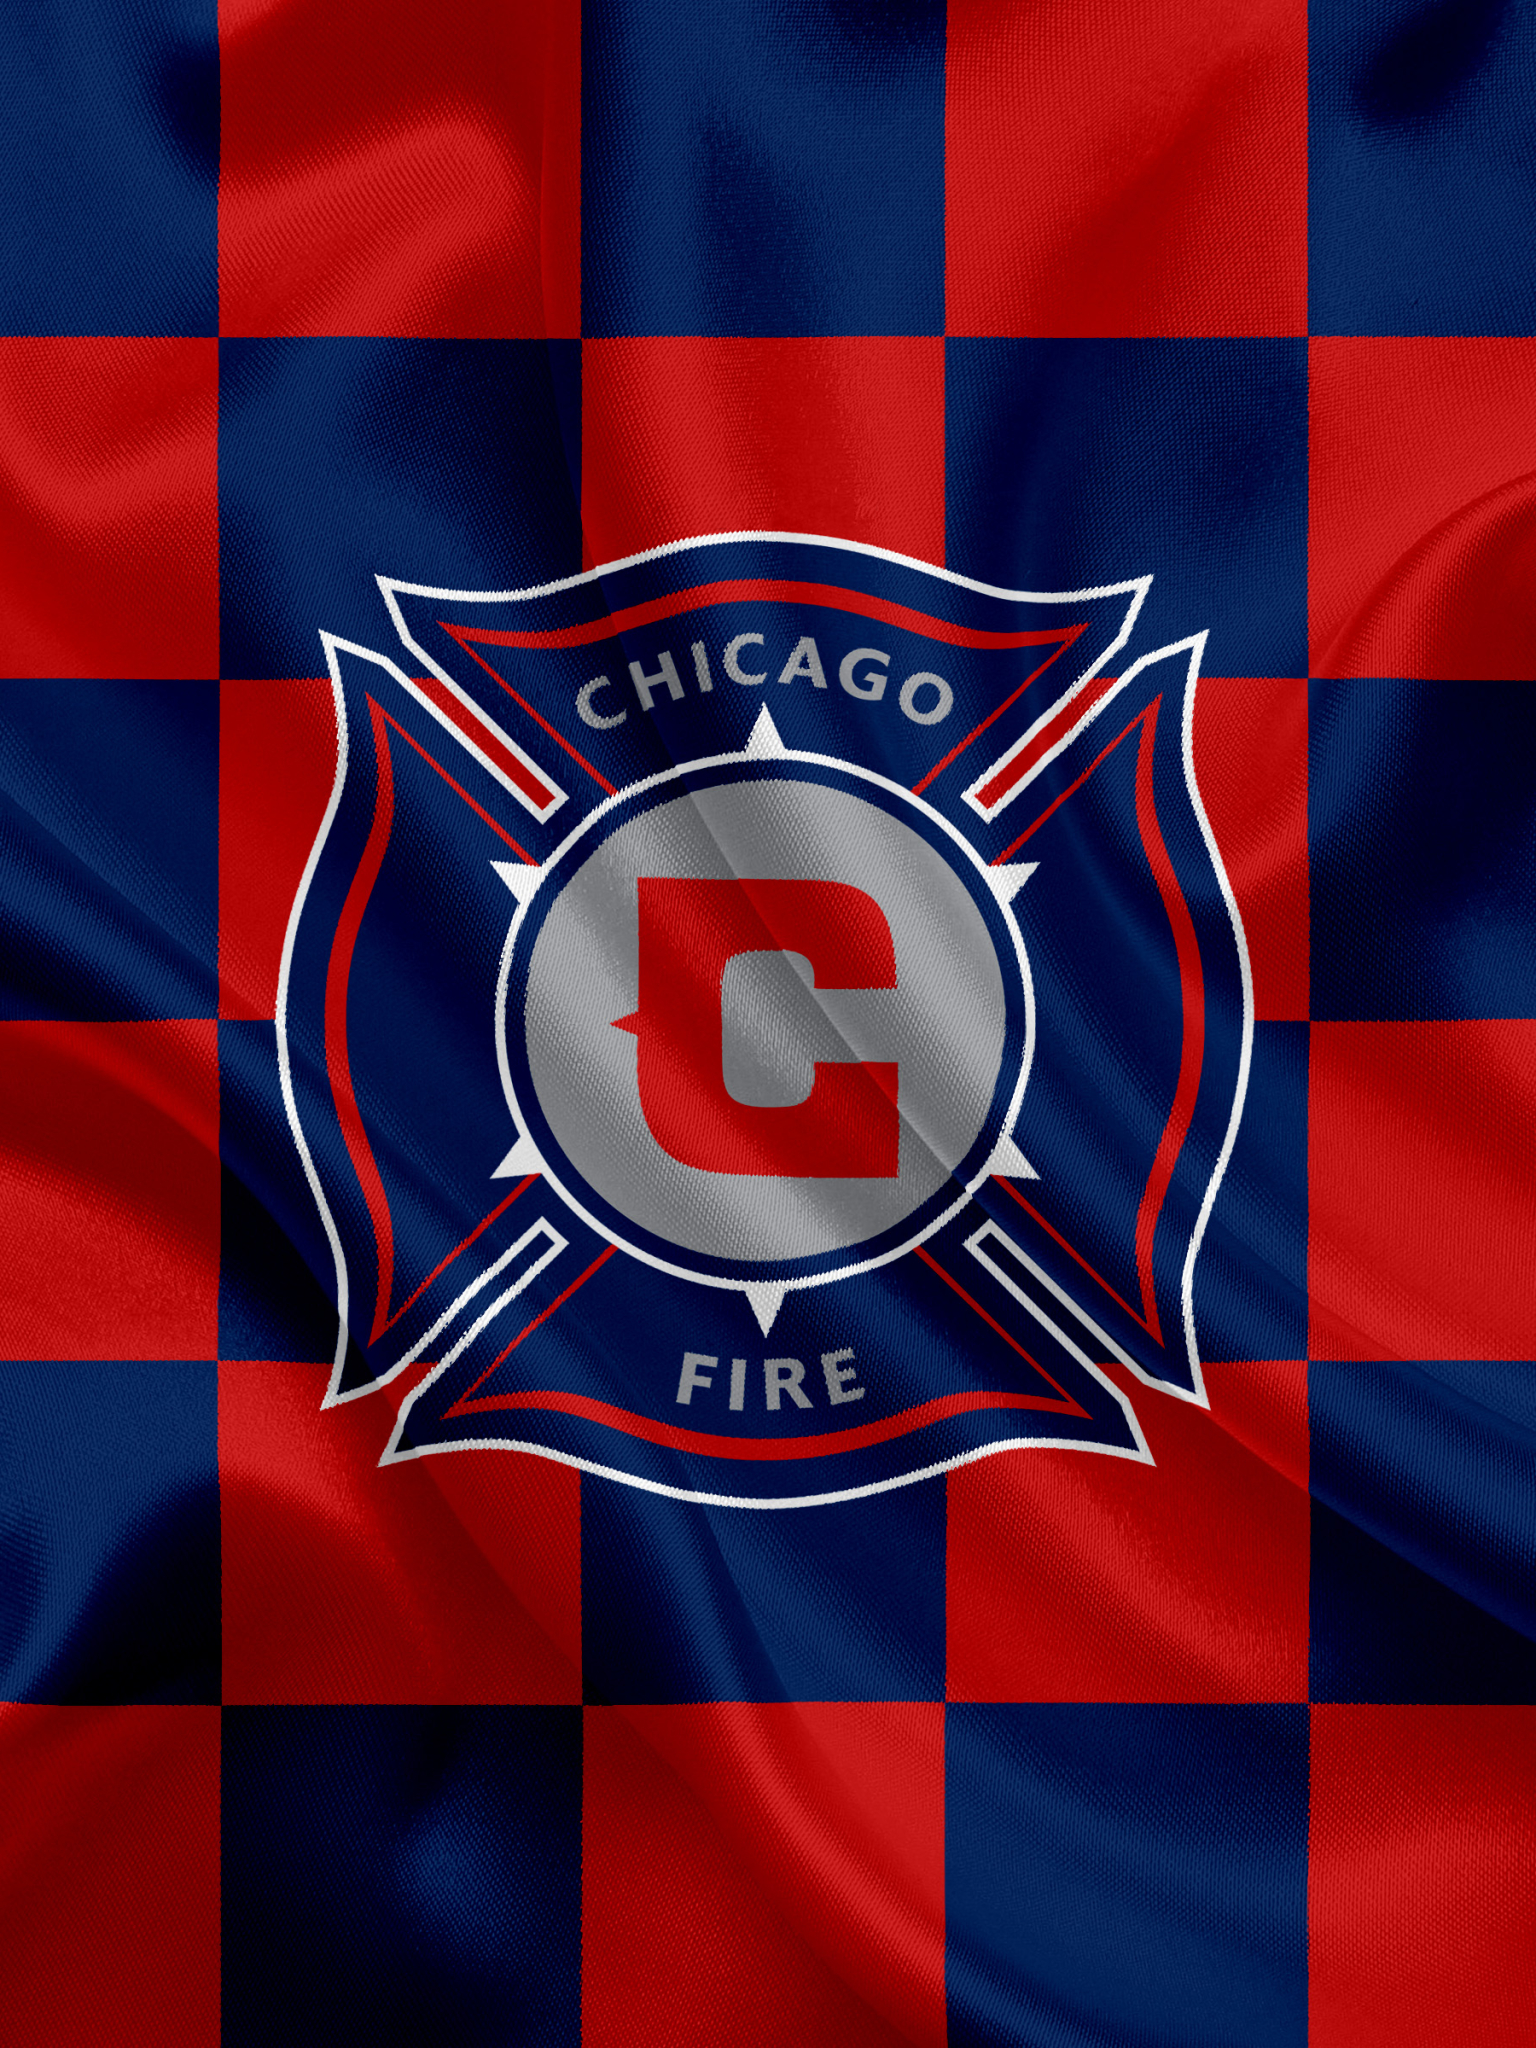 Melhores papéis de parede de Chicago Fire Soccer Club para tela do telefone